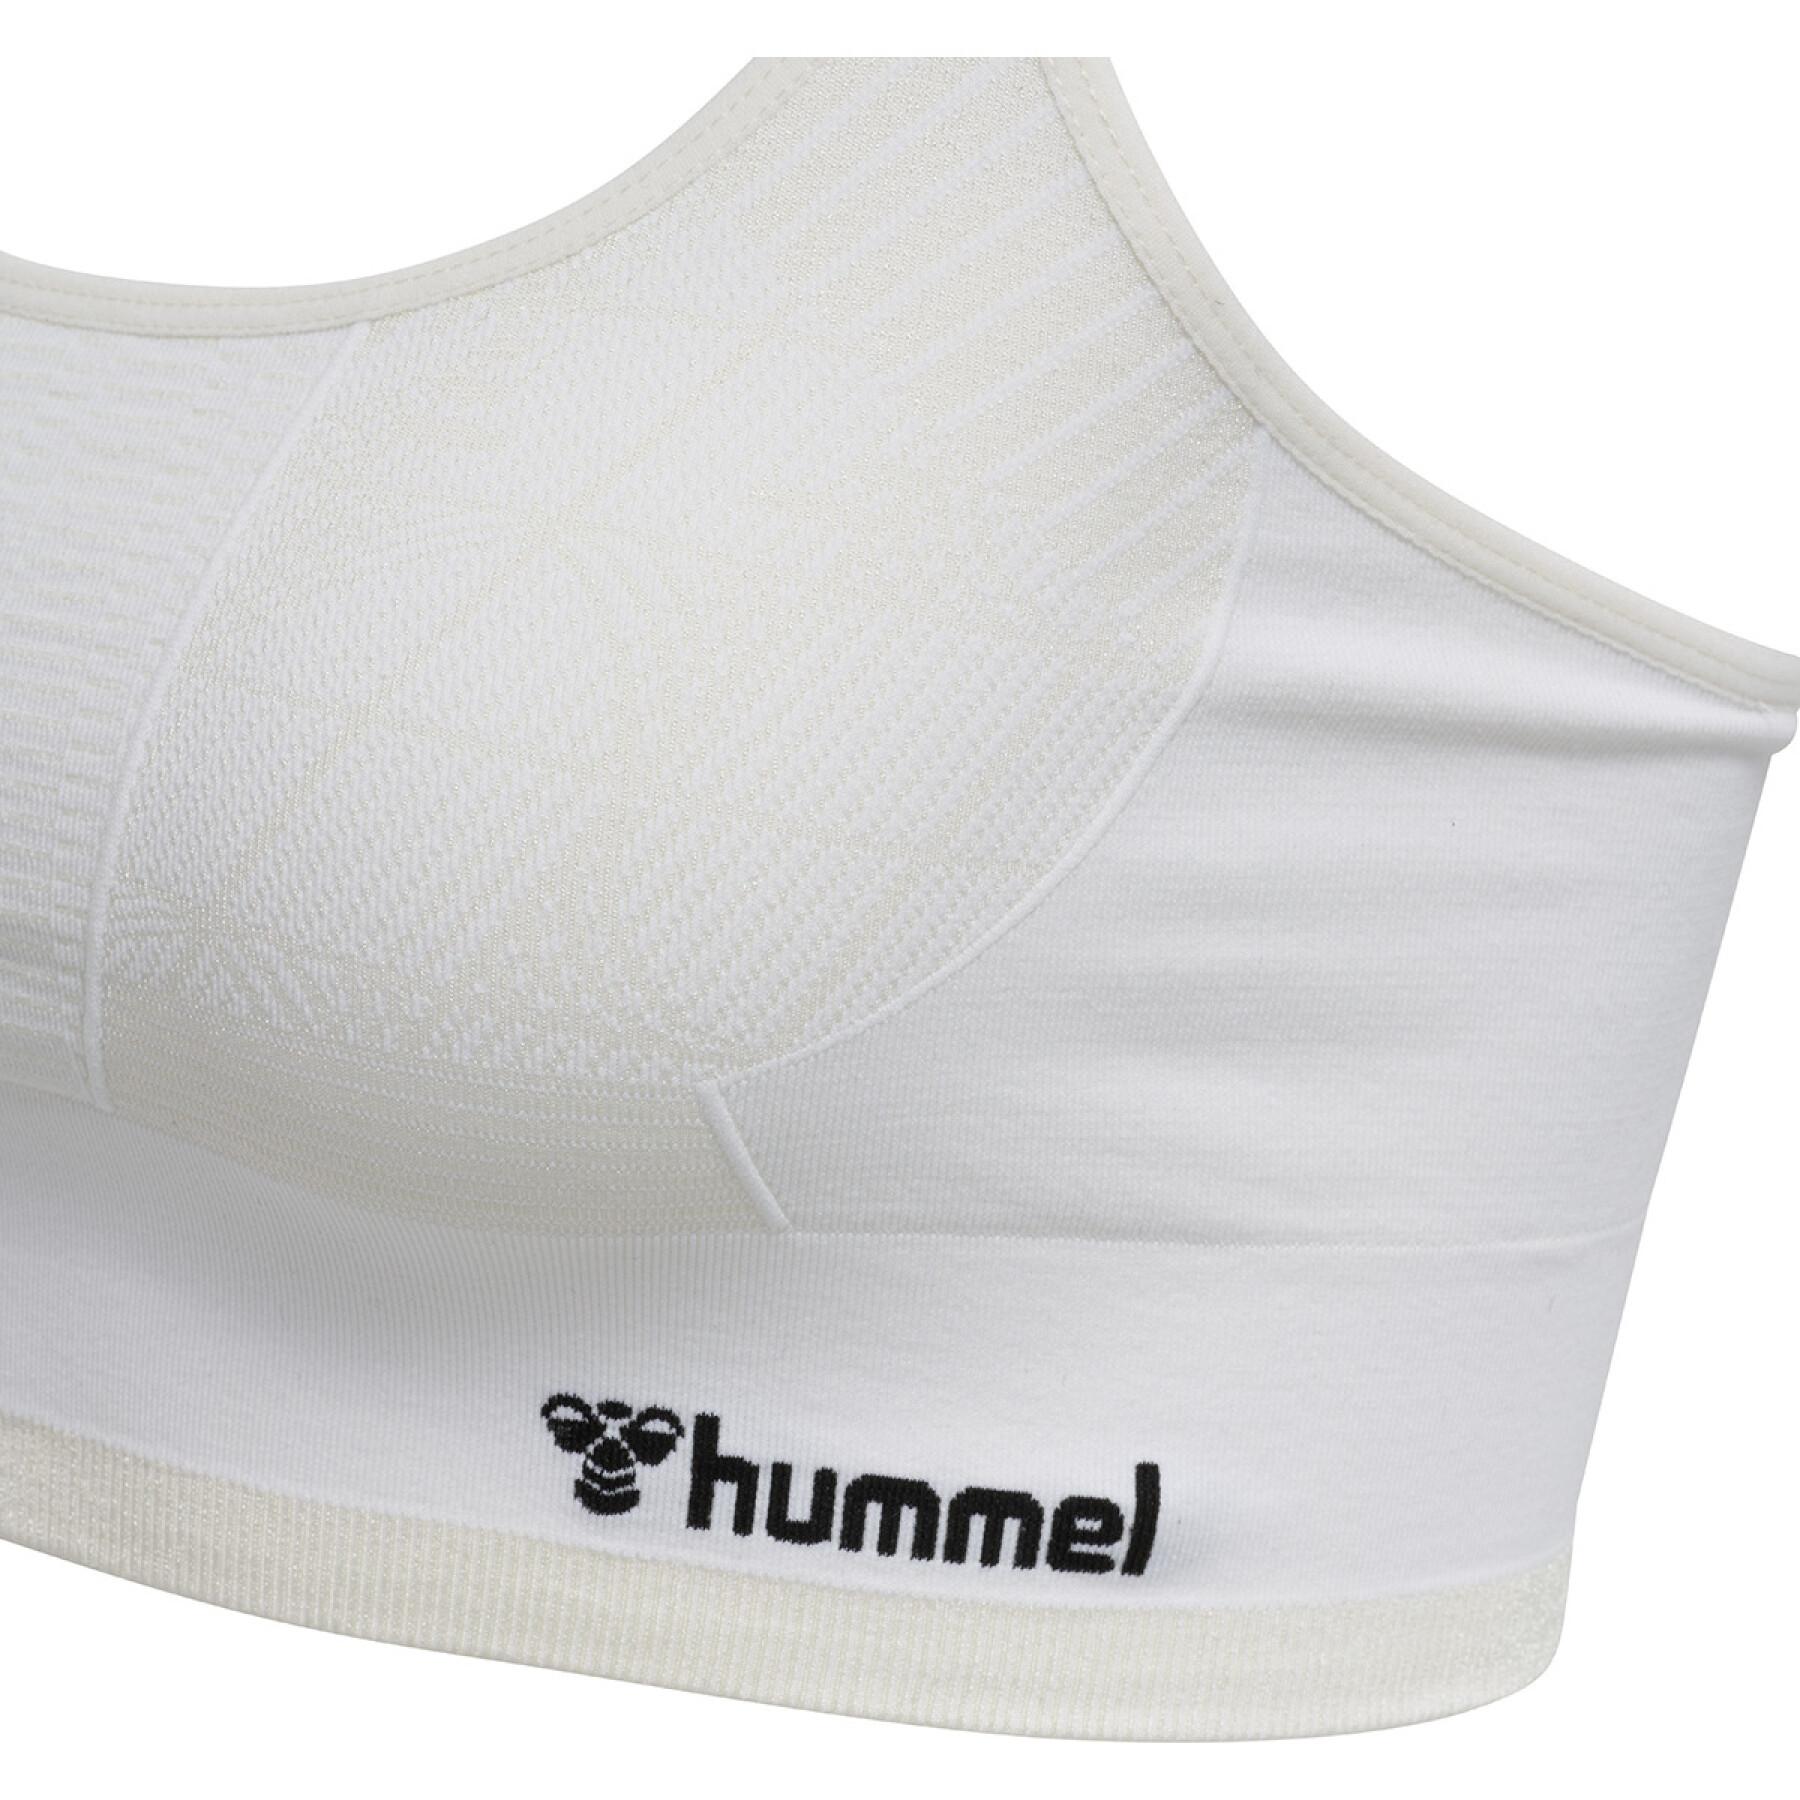 Women's sports bra Hummel hmlluna seamless